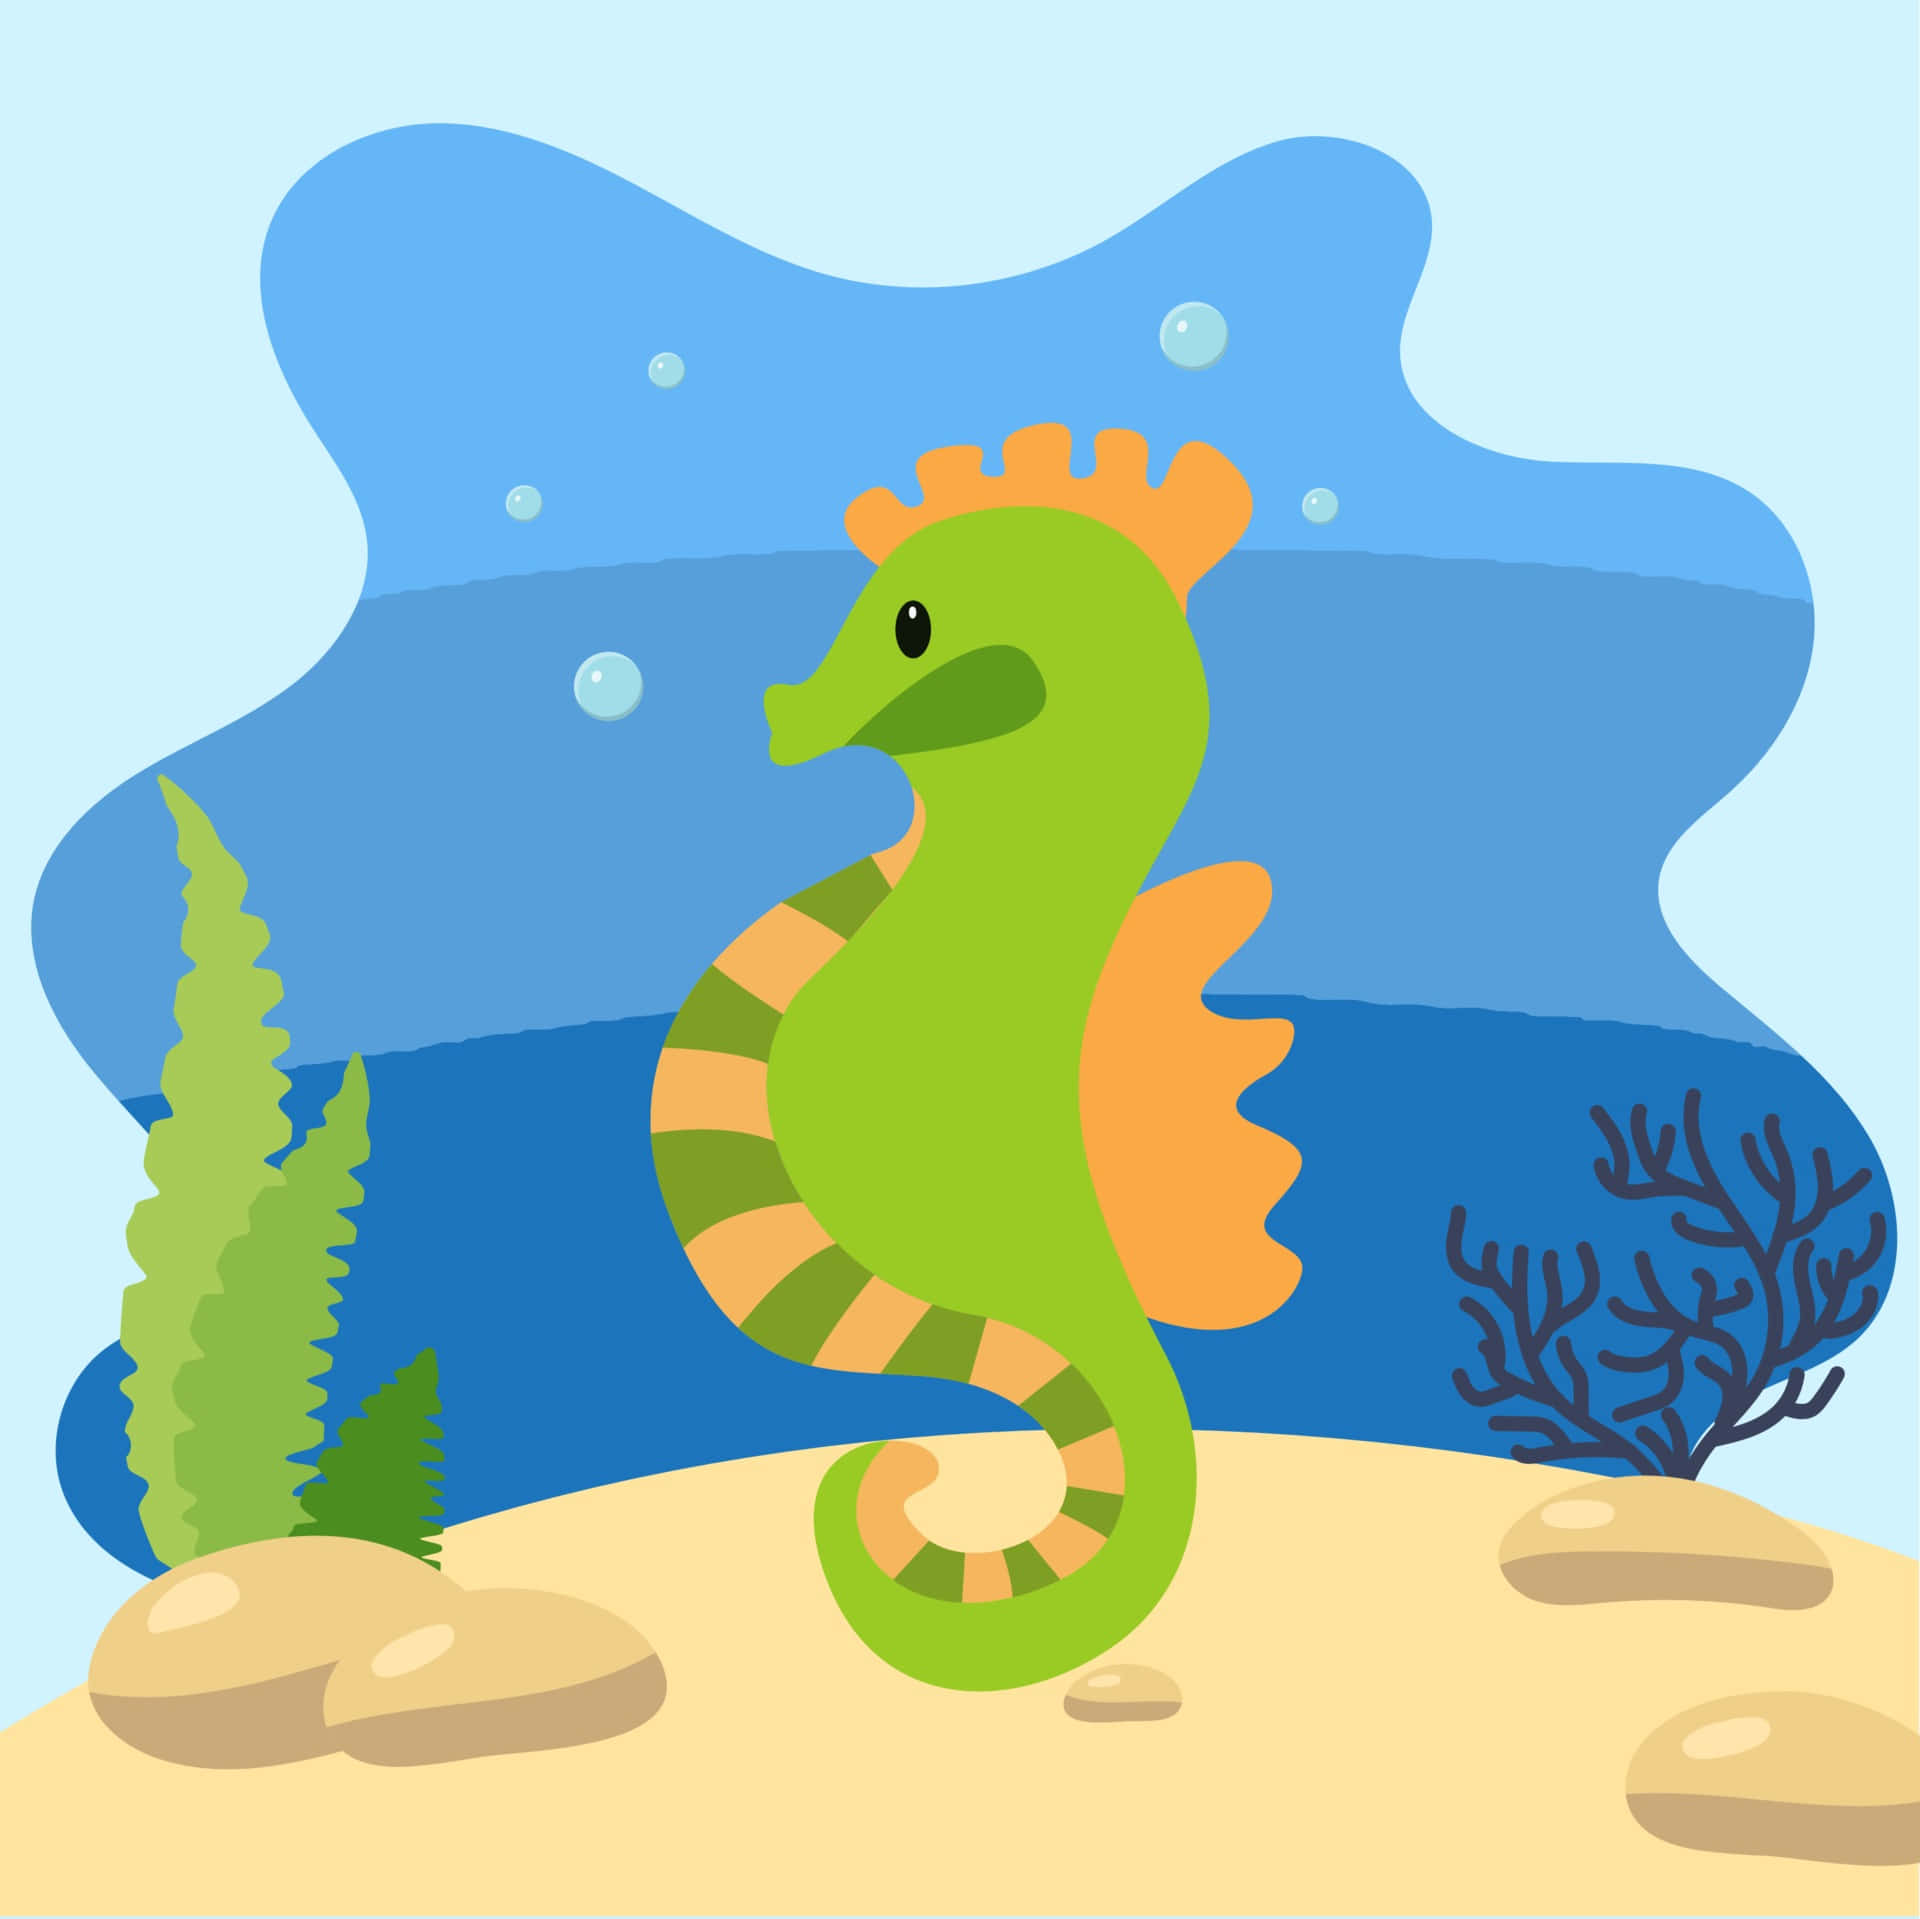 A sea seahorse swimming through an aquamarine scene